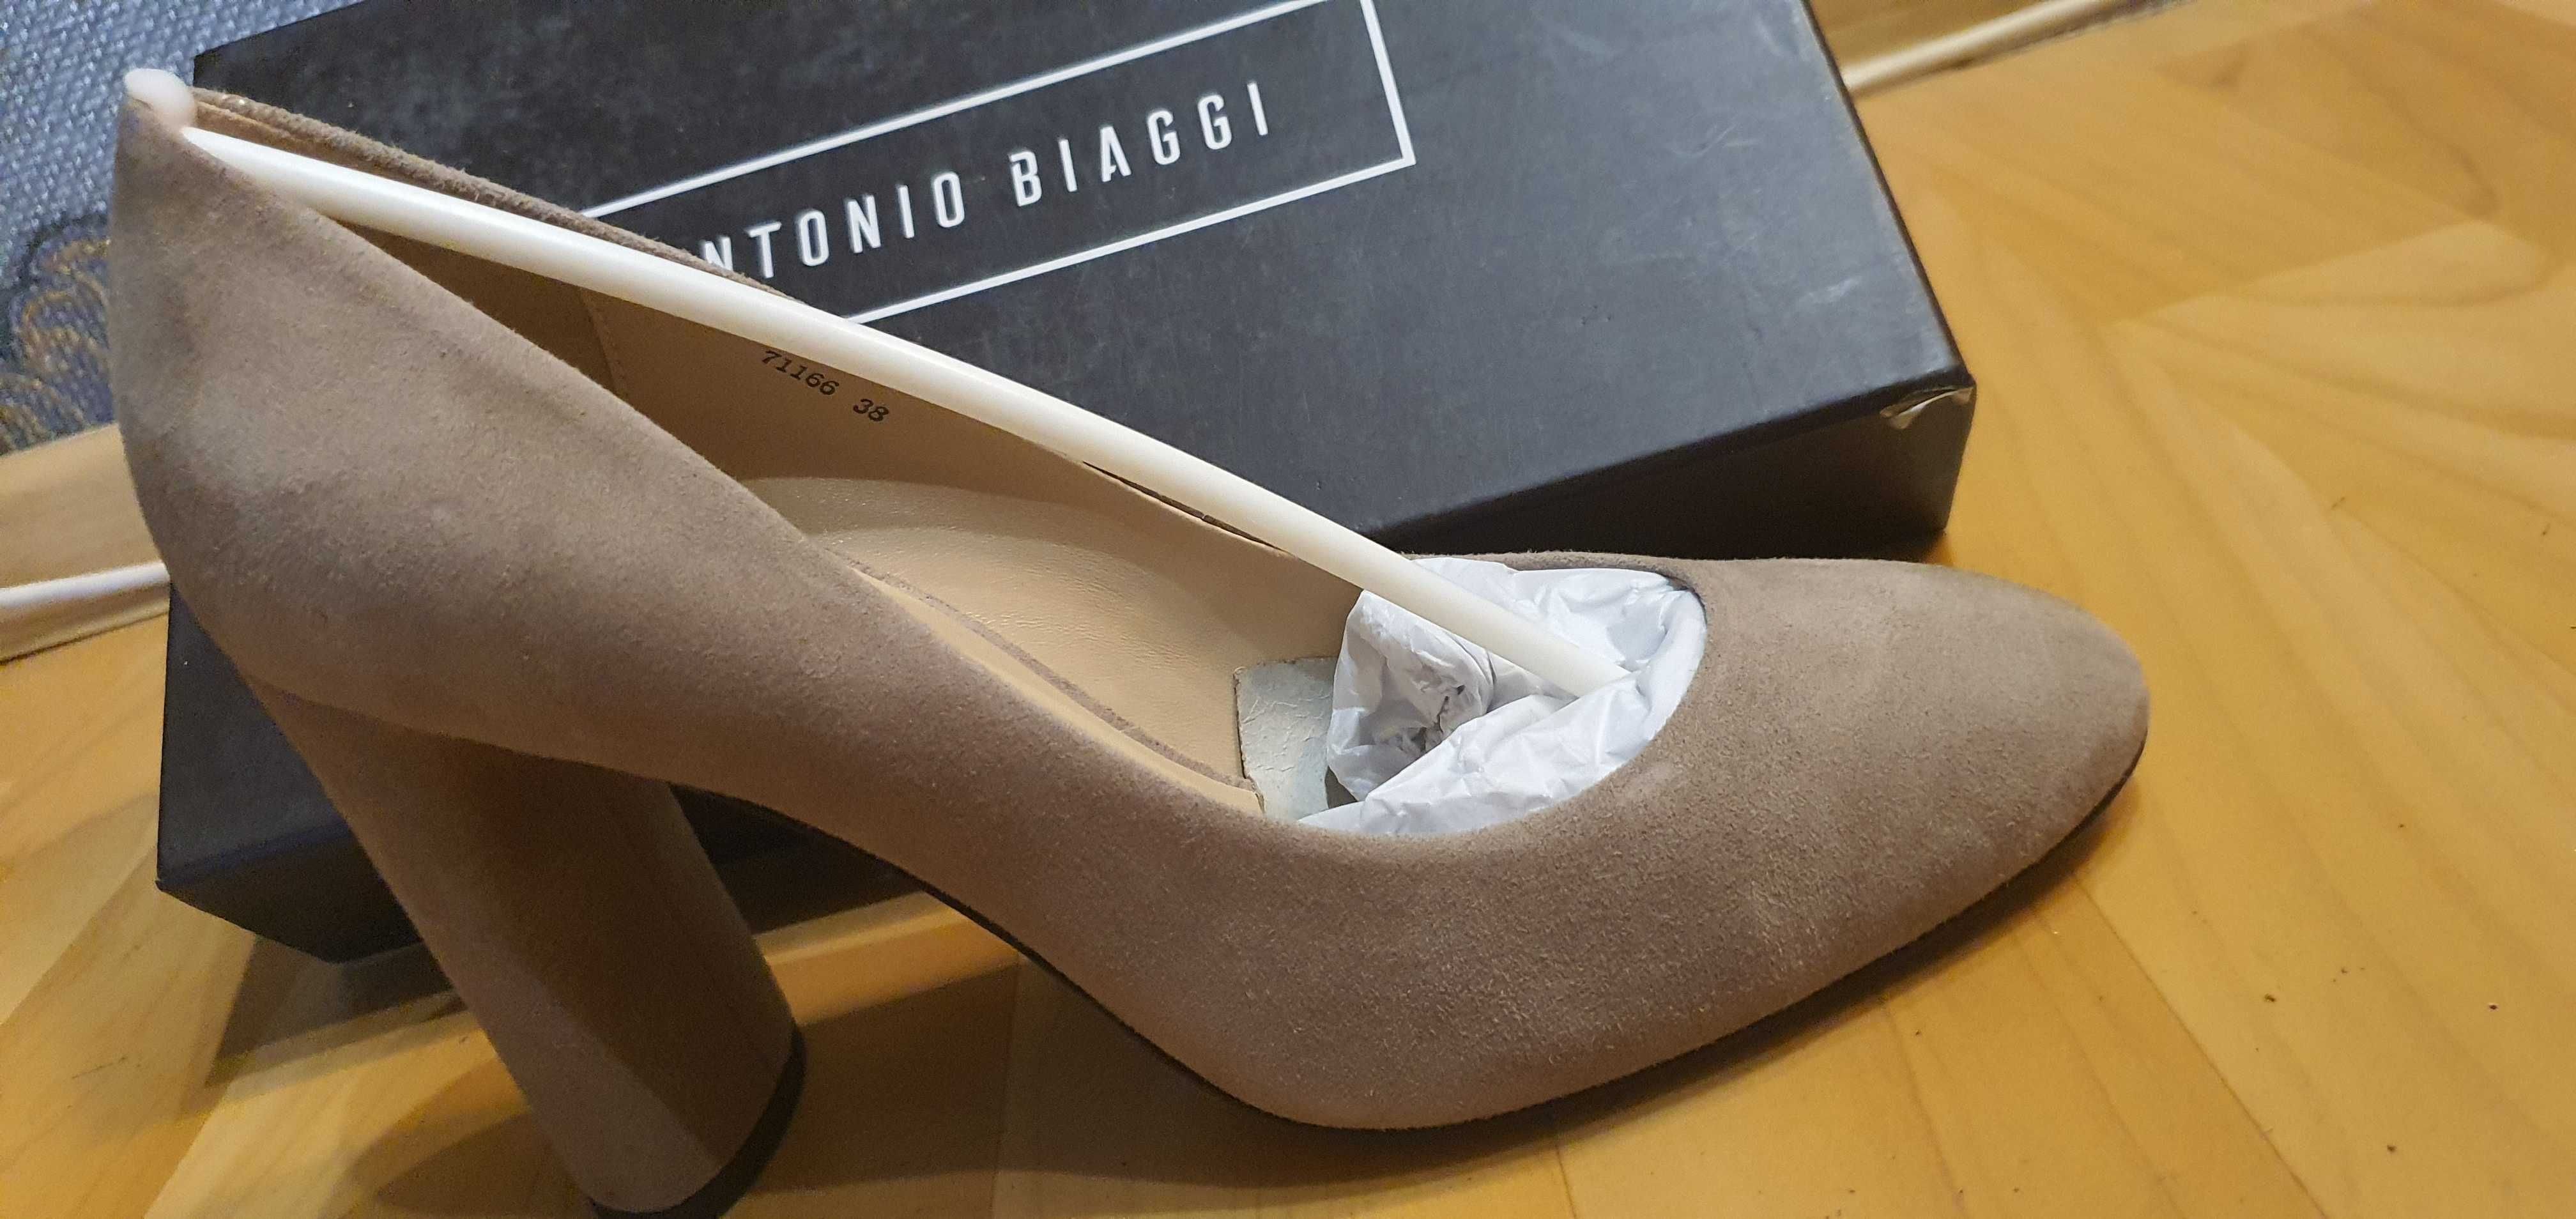 Европейский бренд, новые туфли Antonio Biaggi, 38 размер.